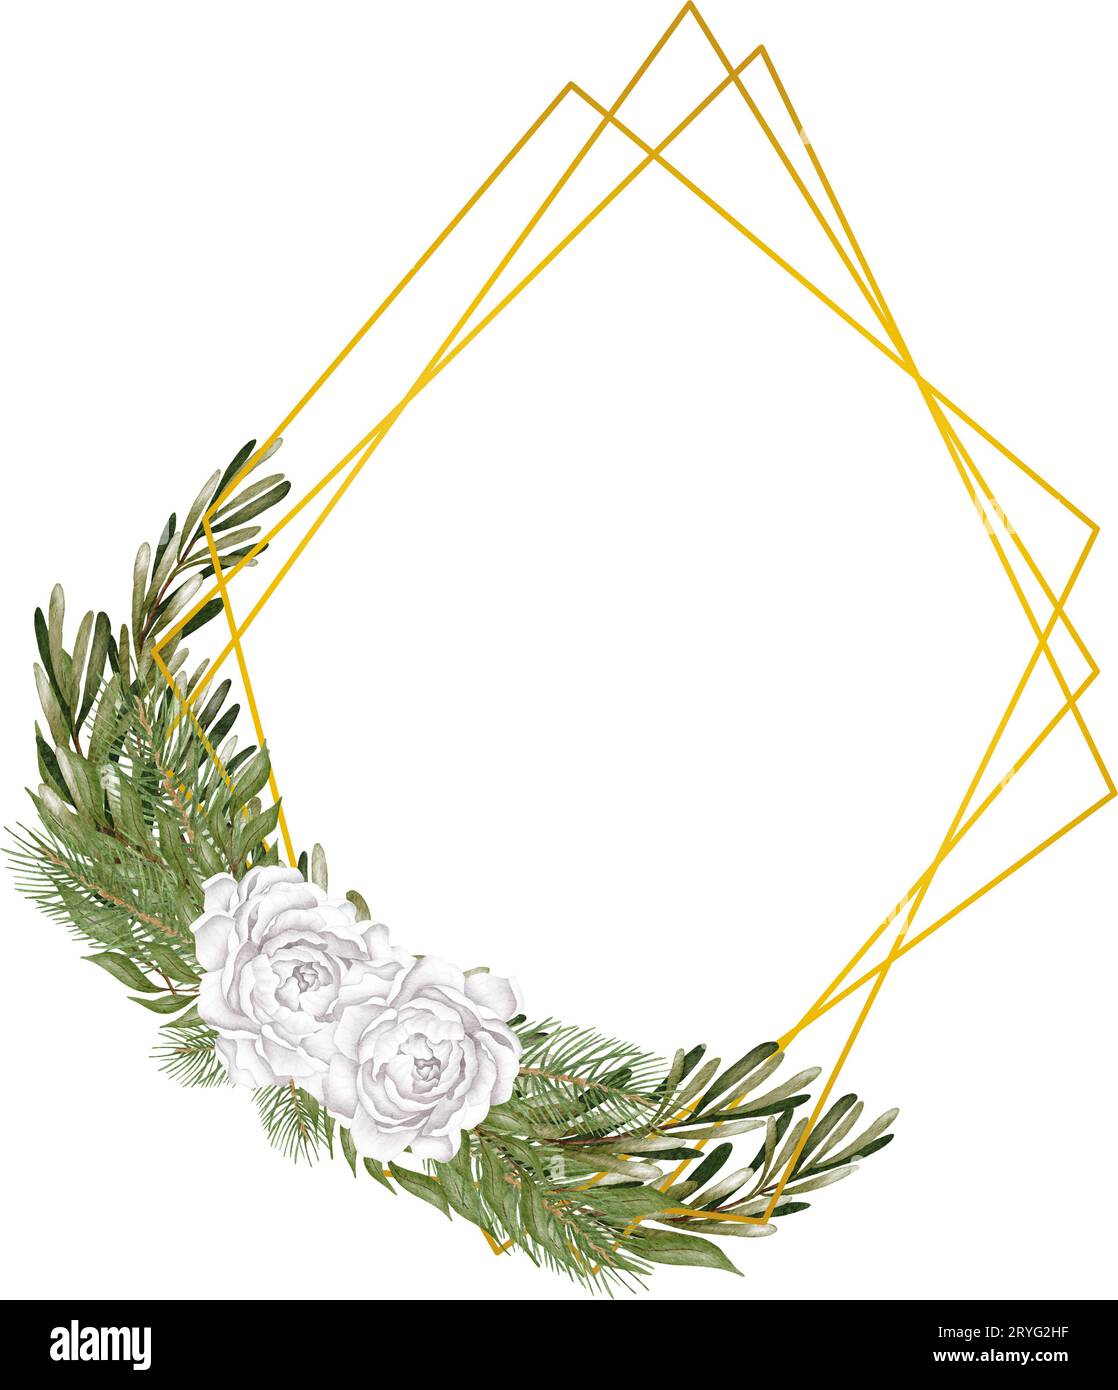 Polyèdre géométrique de luxe, décoration de style déco invitation de mariage, vous pouvez mettre la feuille ou la fleur sur le dessus ou le bas pour faire elemen Banque D'Images